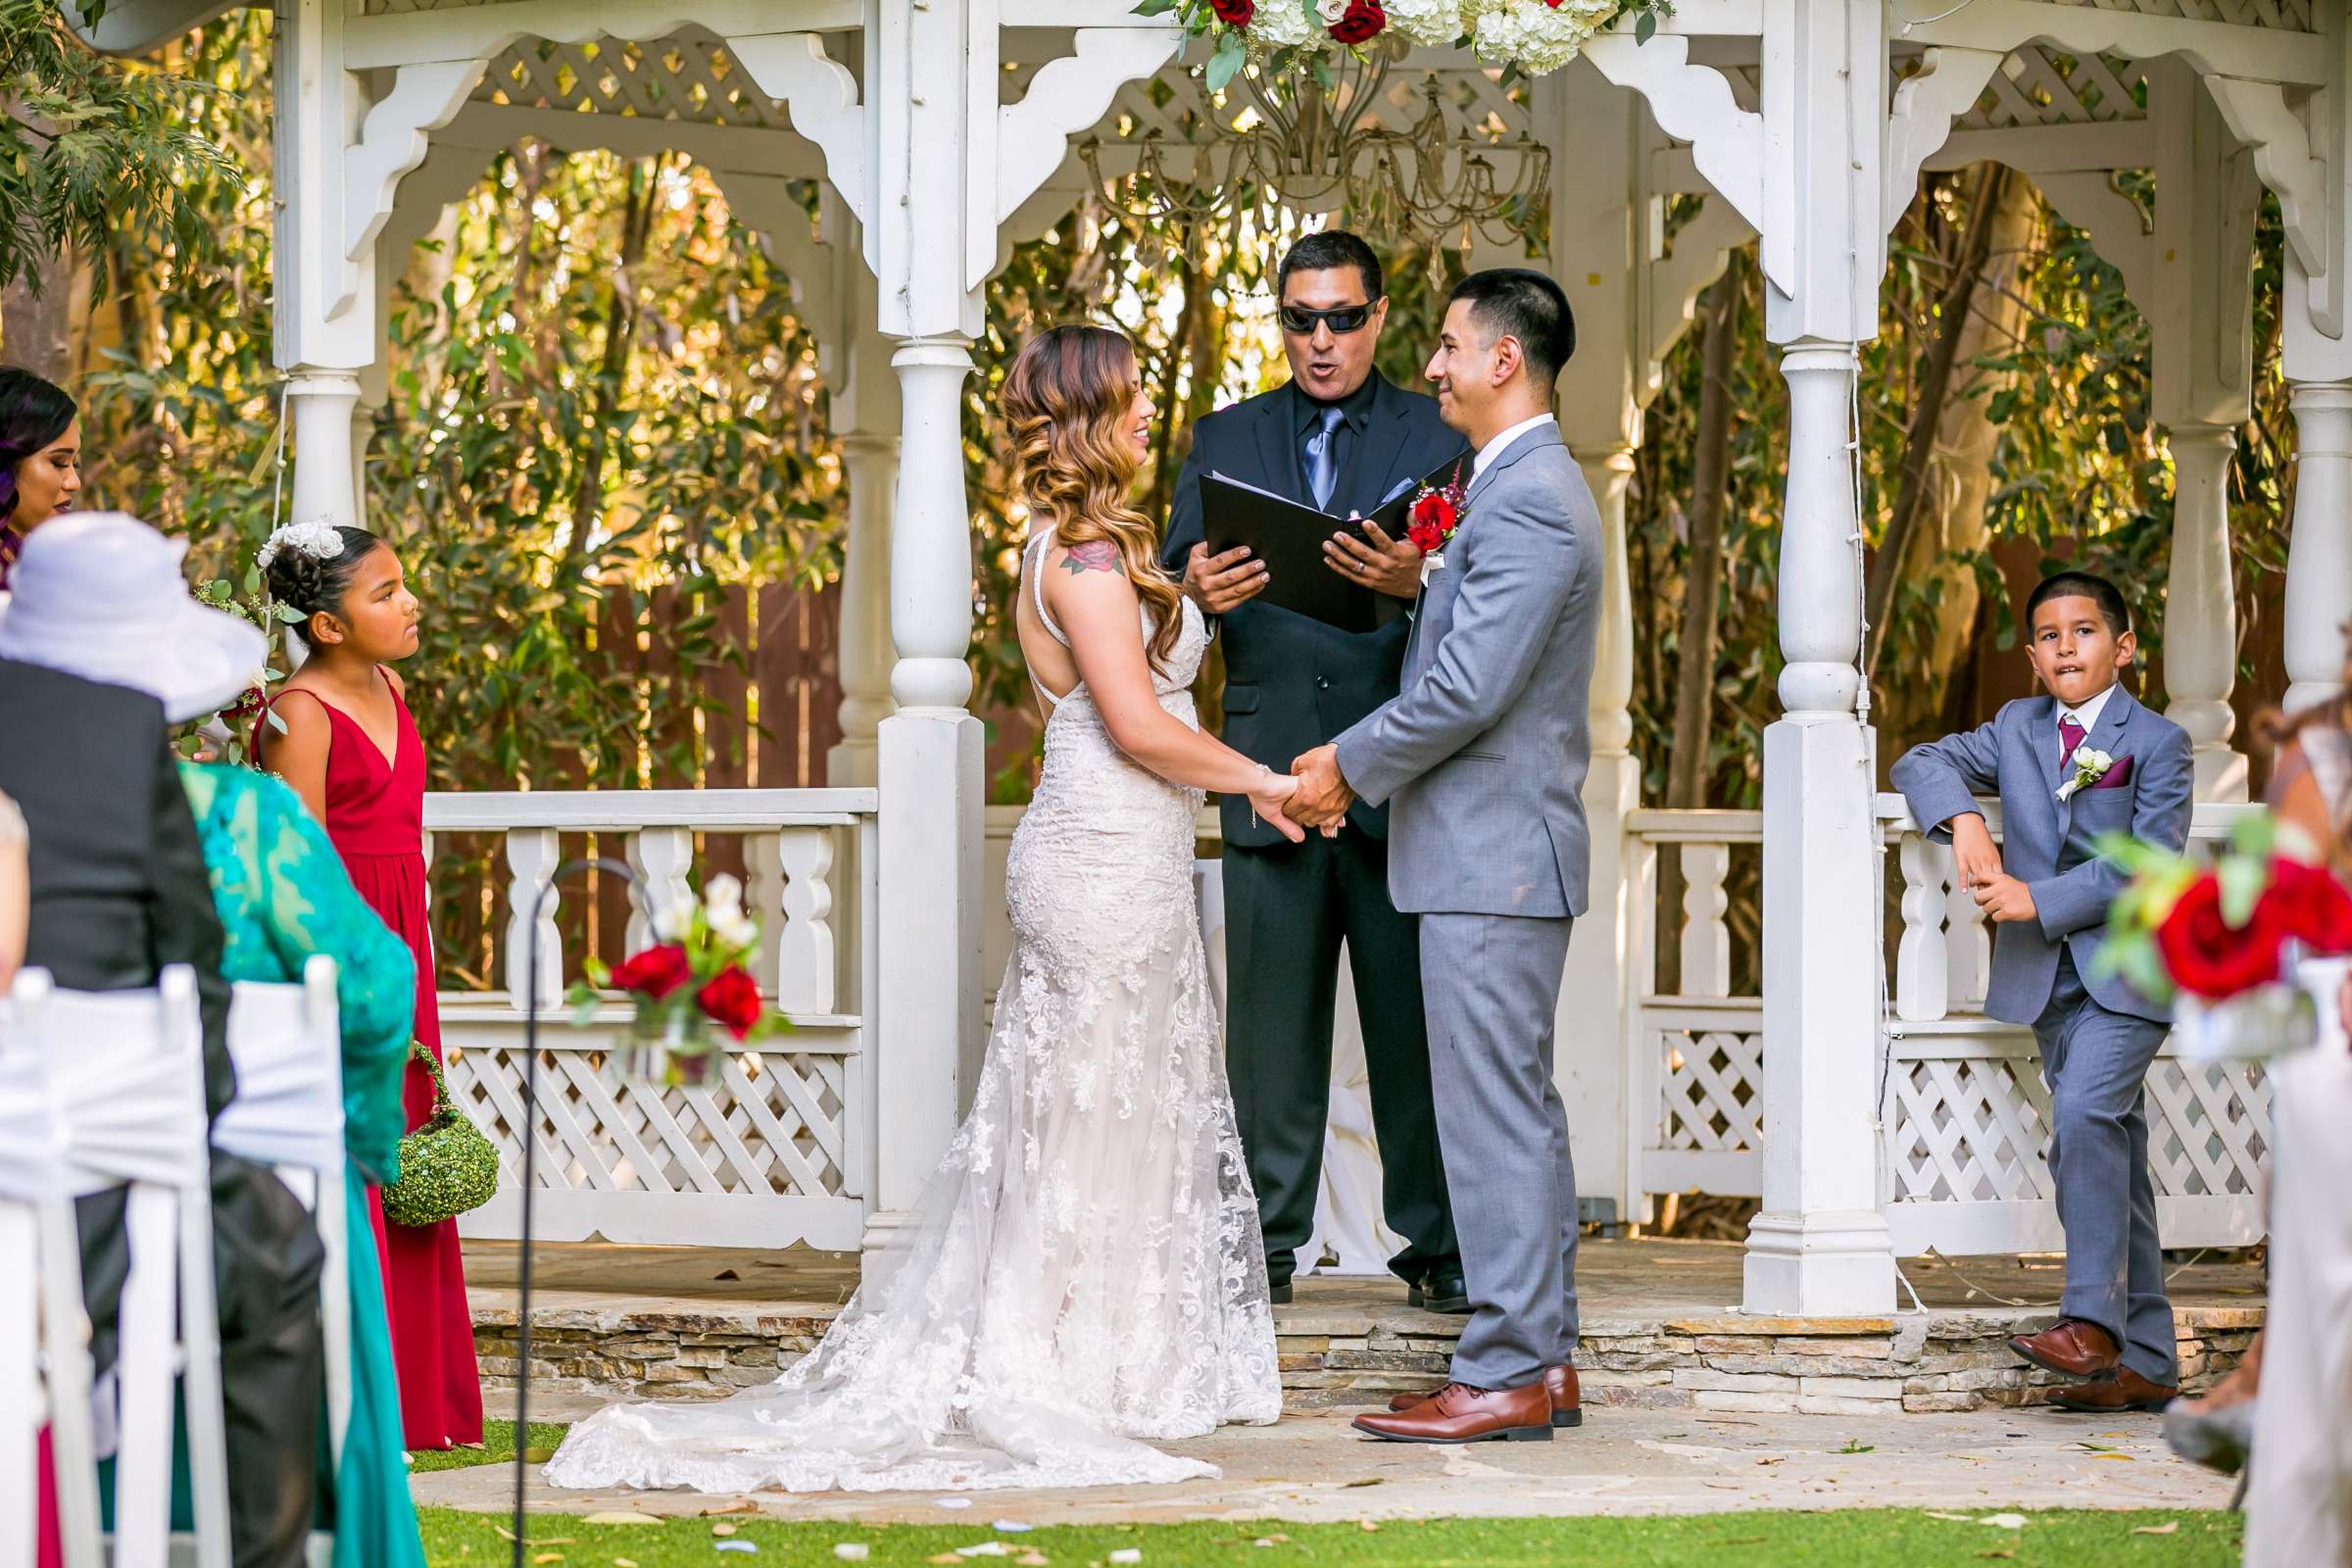 Twin Oaks House & Gardens Wedding Estate Wedding, Merrilynn and Trey Wedding Photo #82 by True Photography